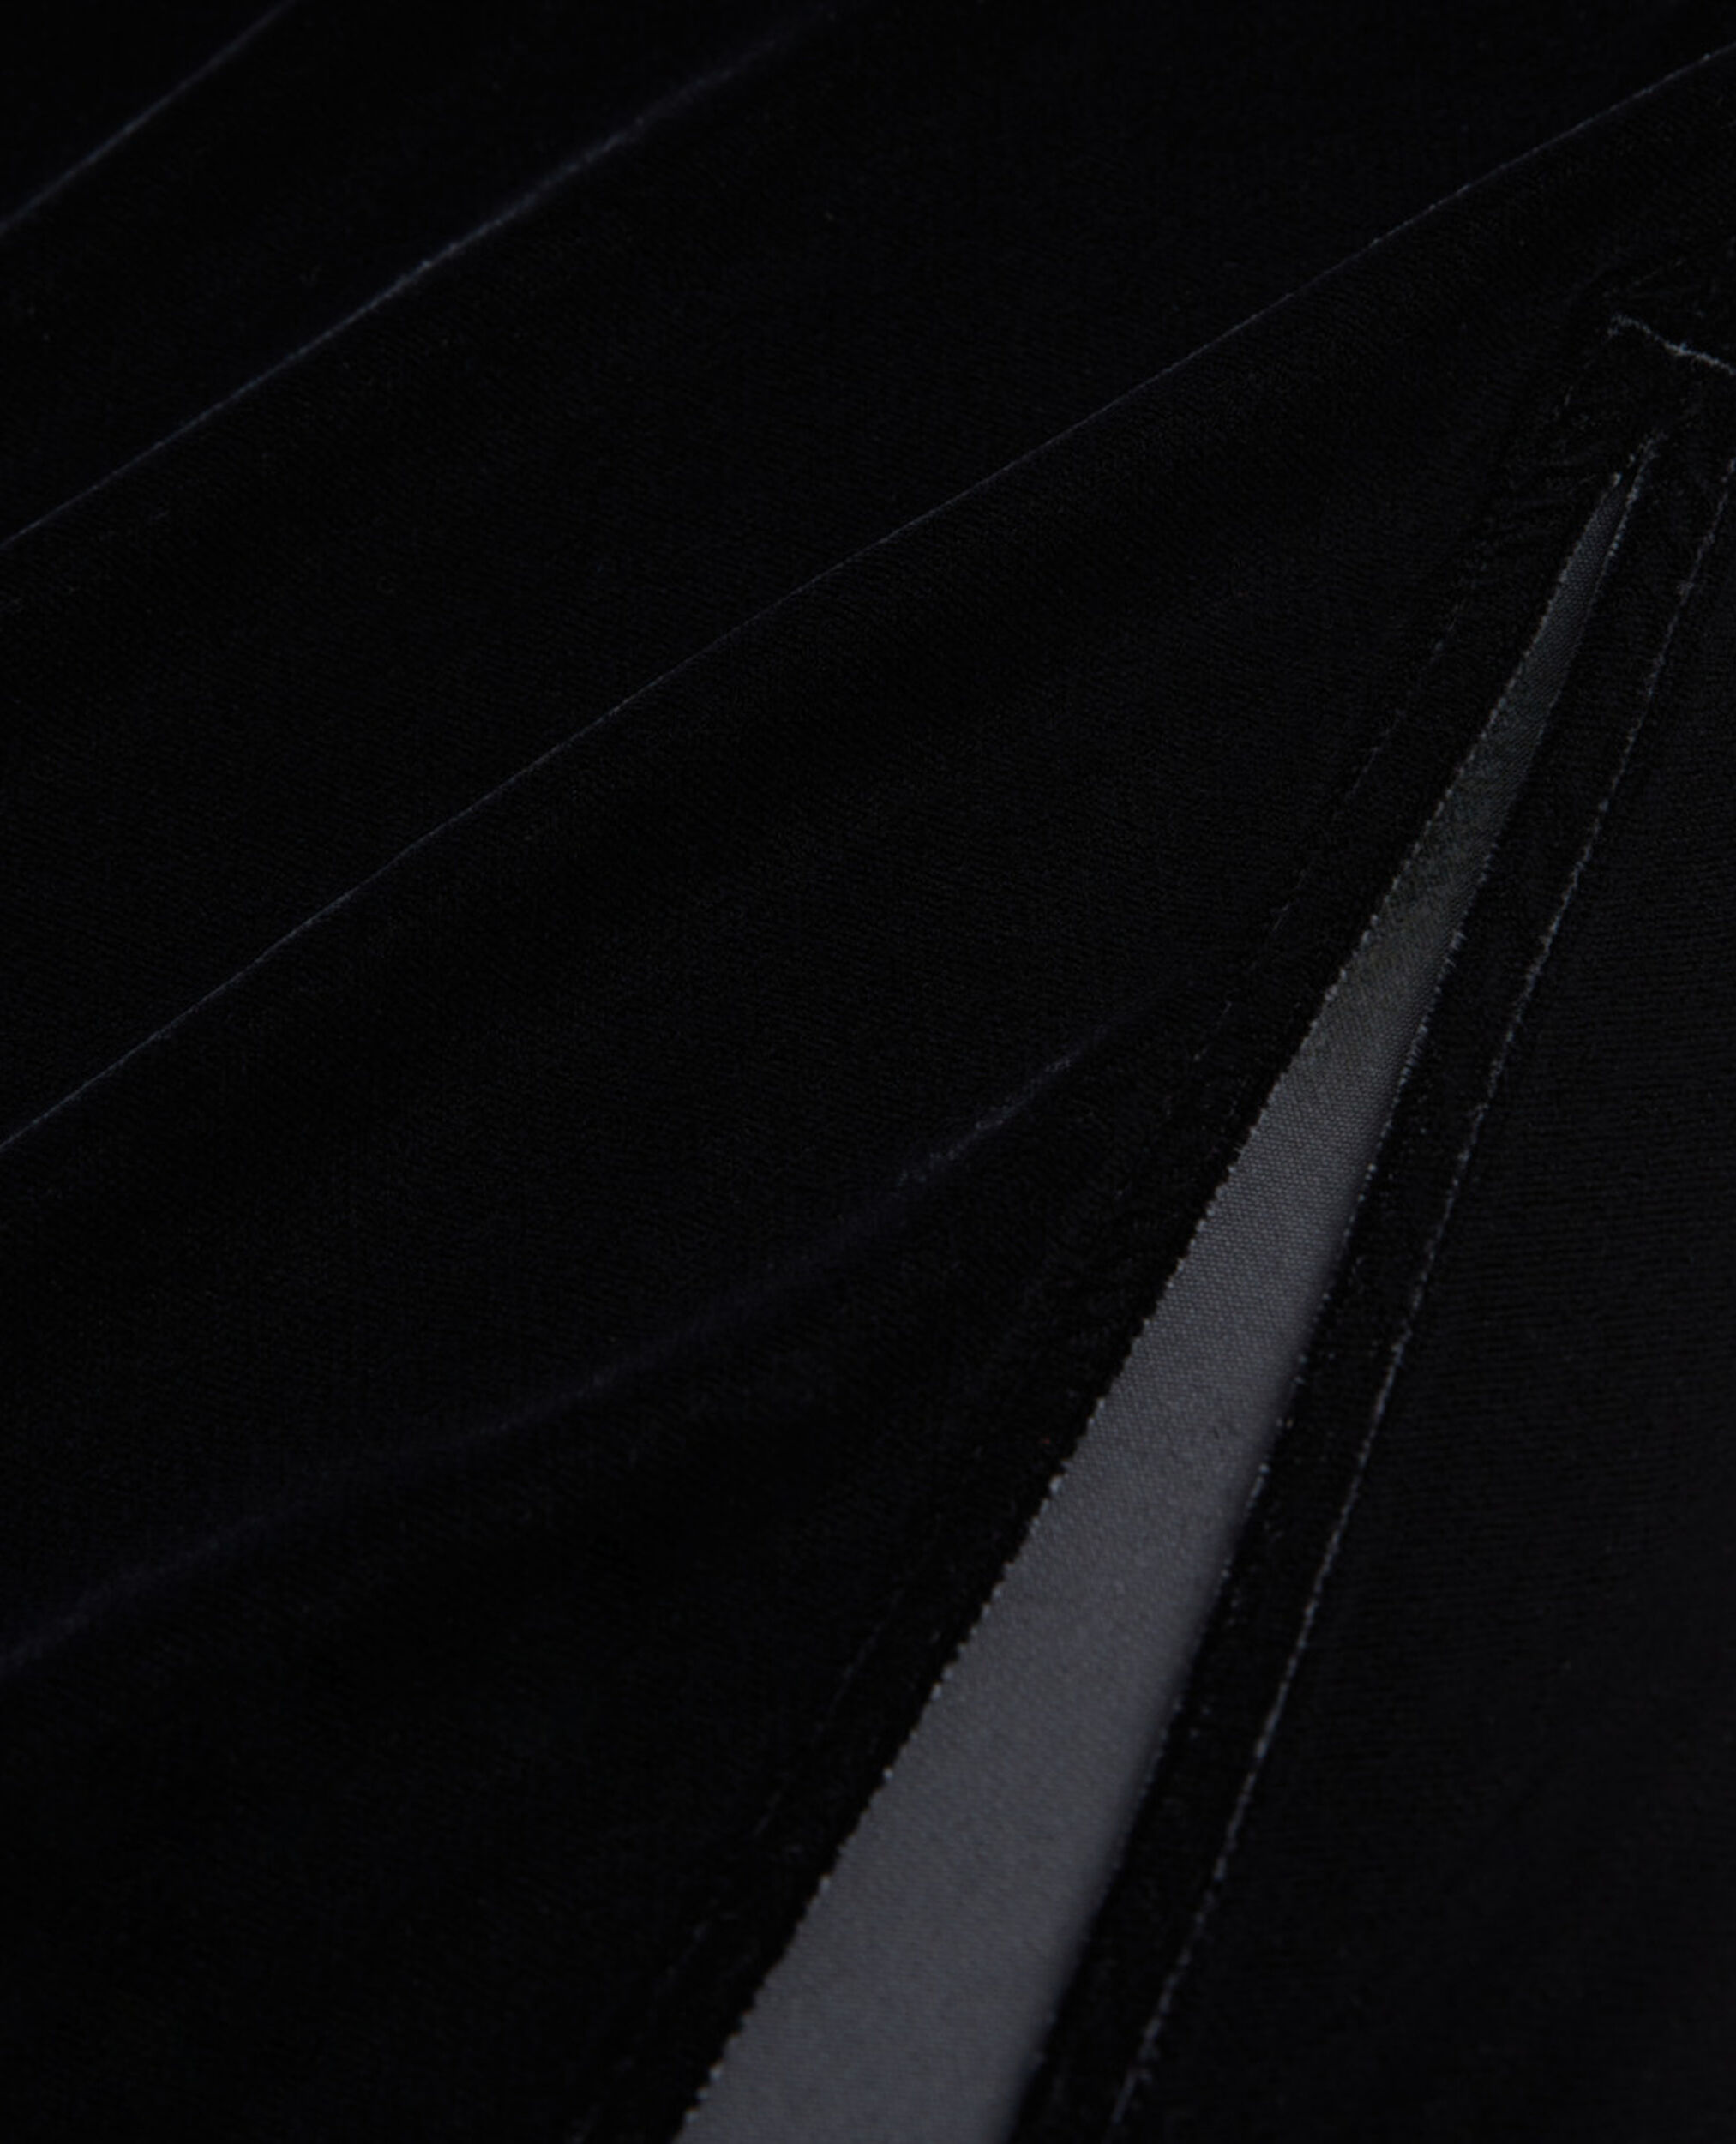 Long black velvet skirt, BLACK, hi-res image number null